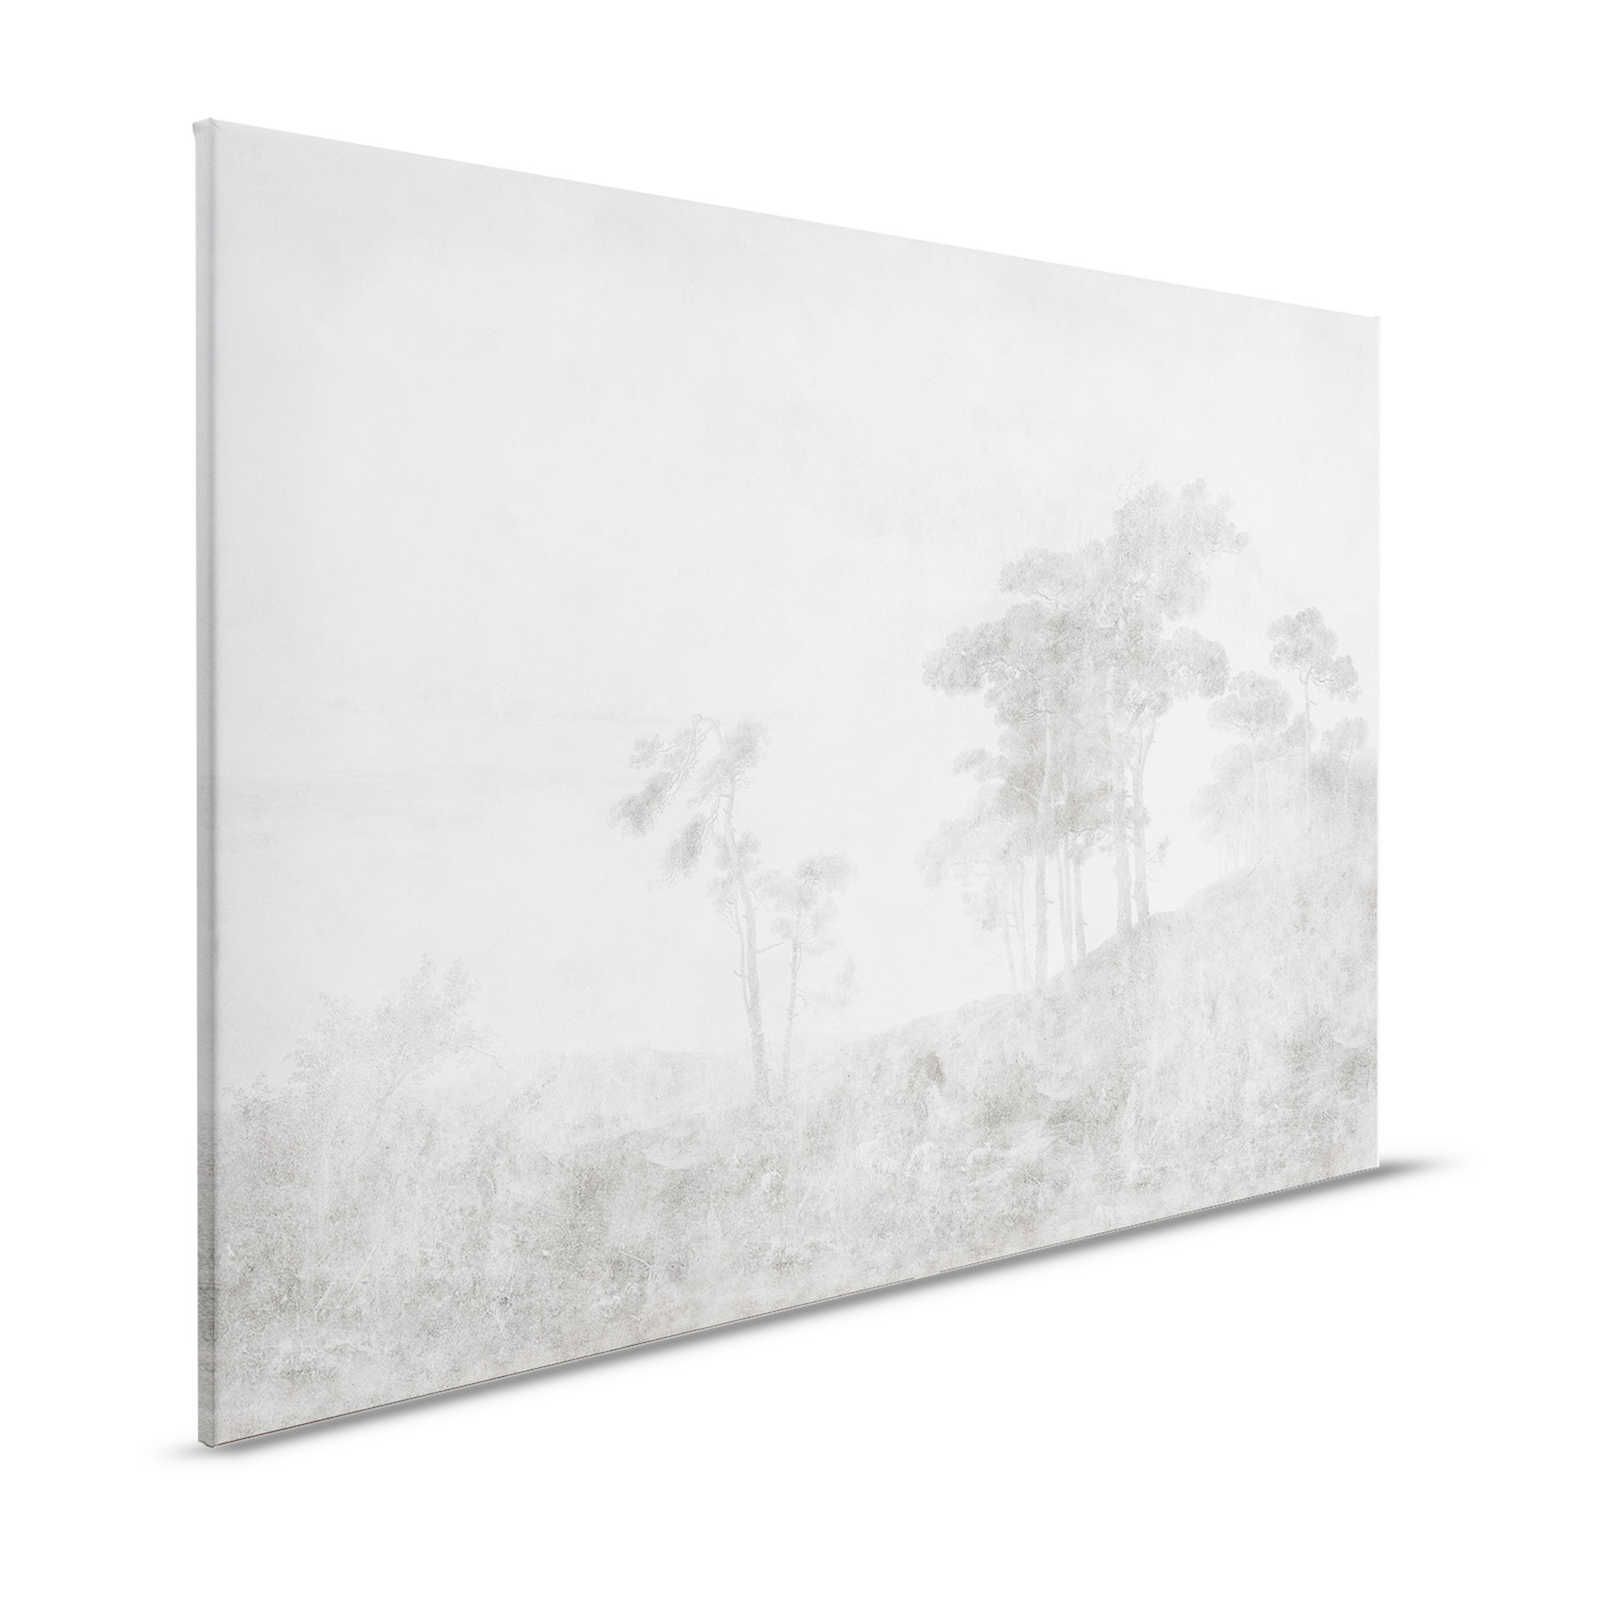 Romantic Grove 2 - toile paysage style peinture vintage - 1,20 m x 0,80 m
